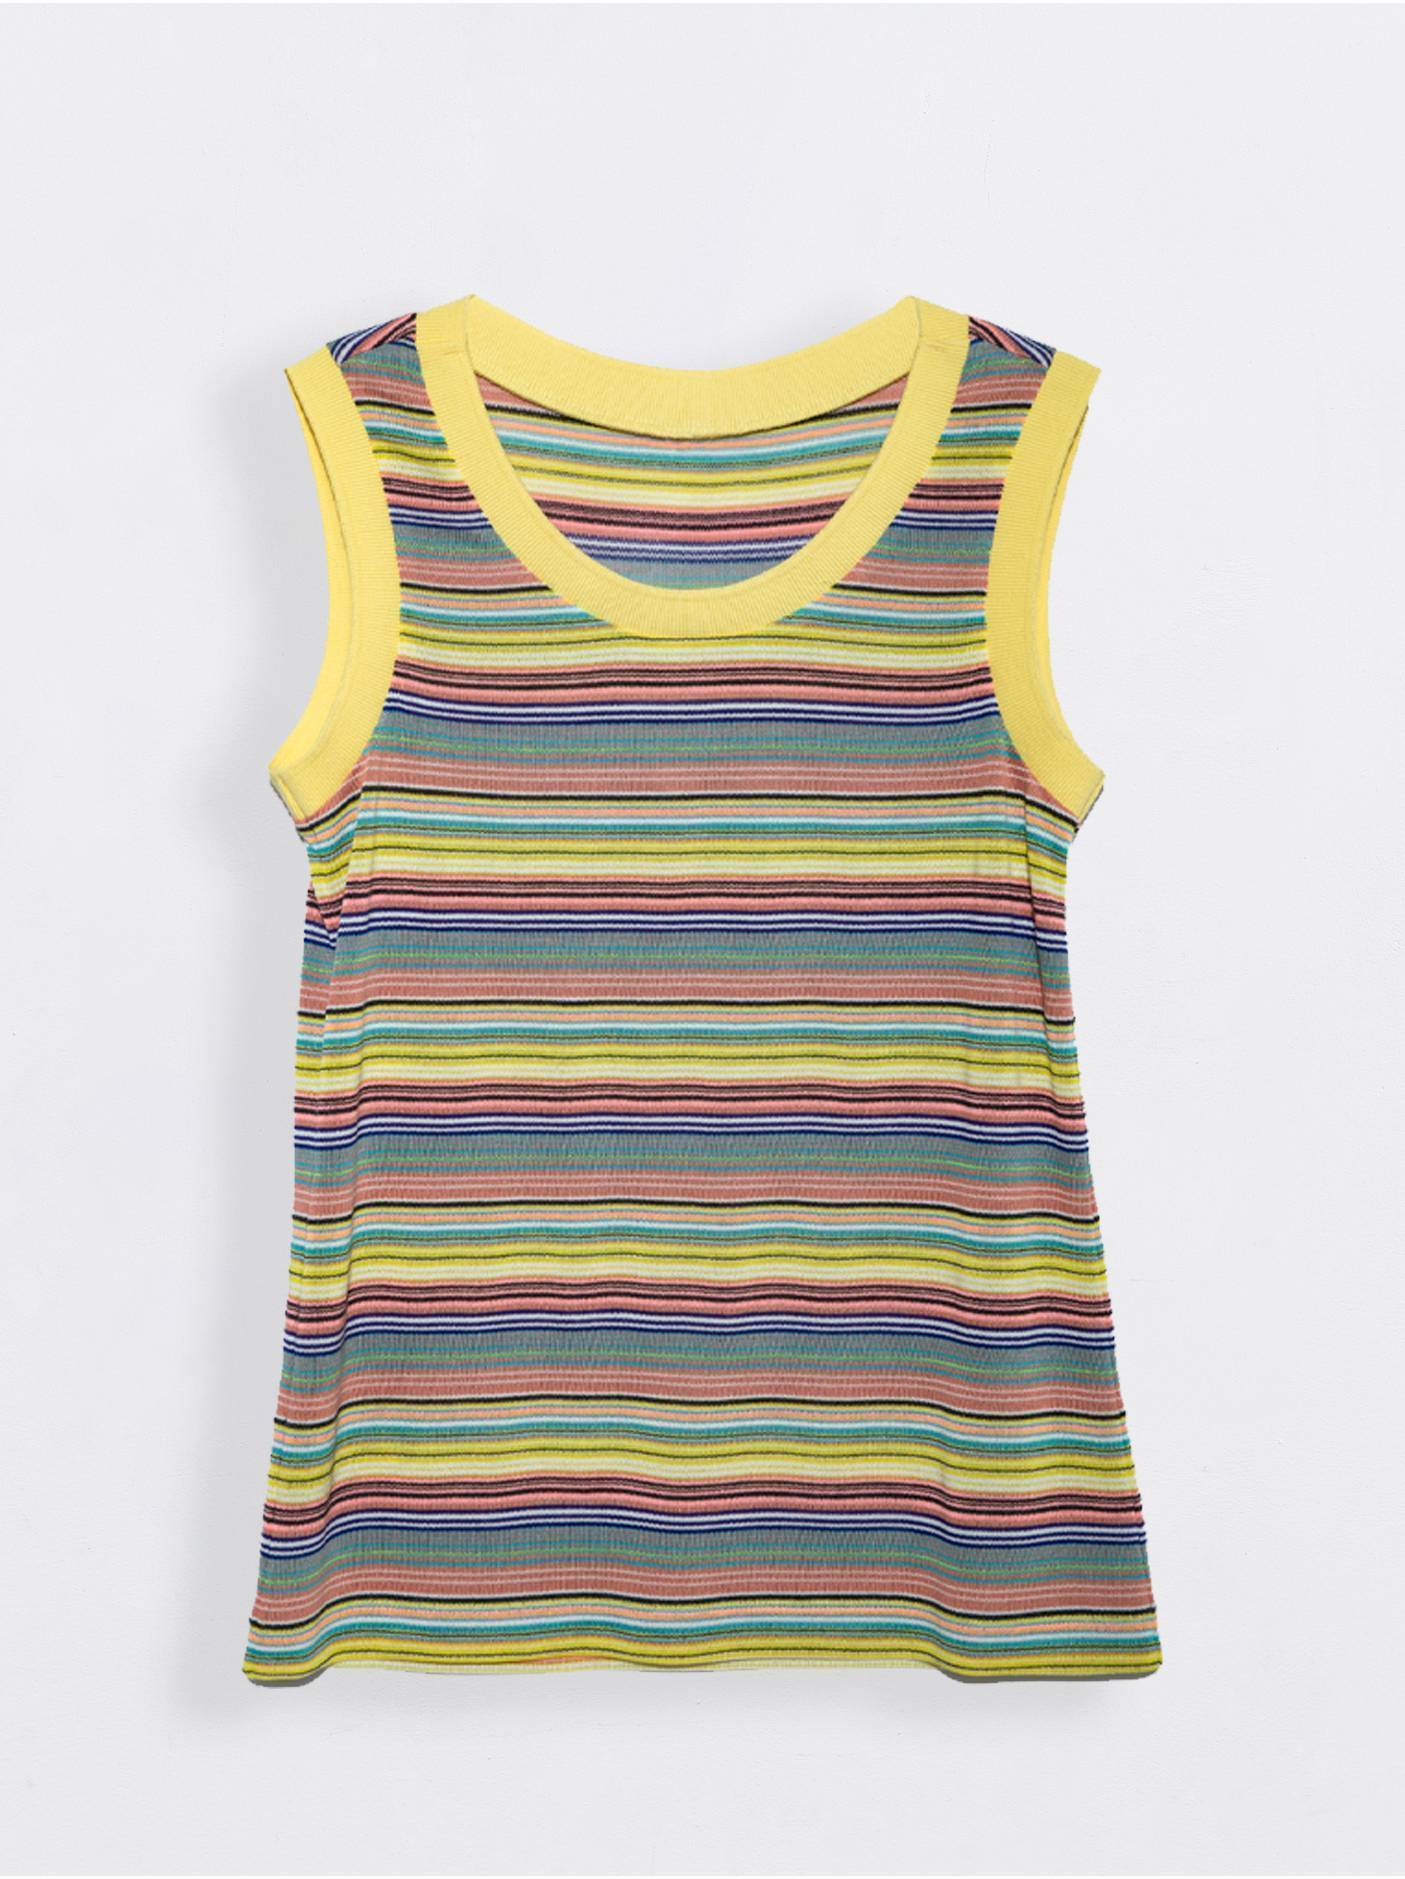 Топ в полоску с эластичными манжетами LD 921-1 Conte ⭐️, цвет yellow stripes, размер 170-84